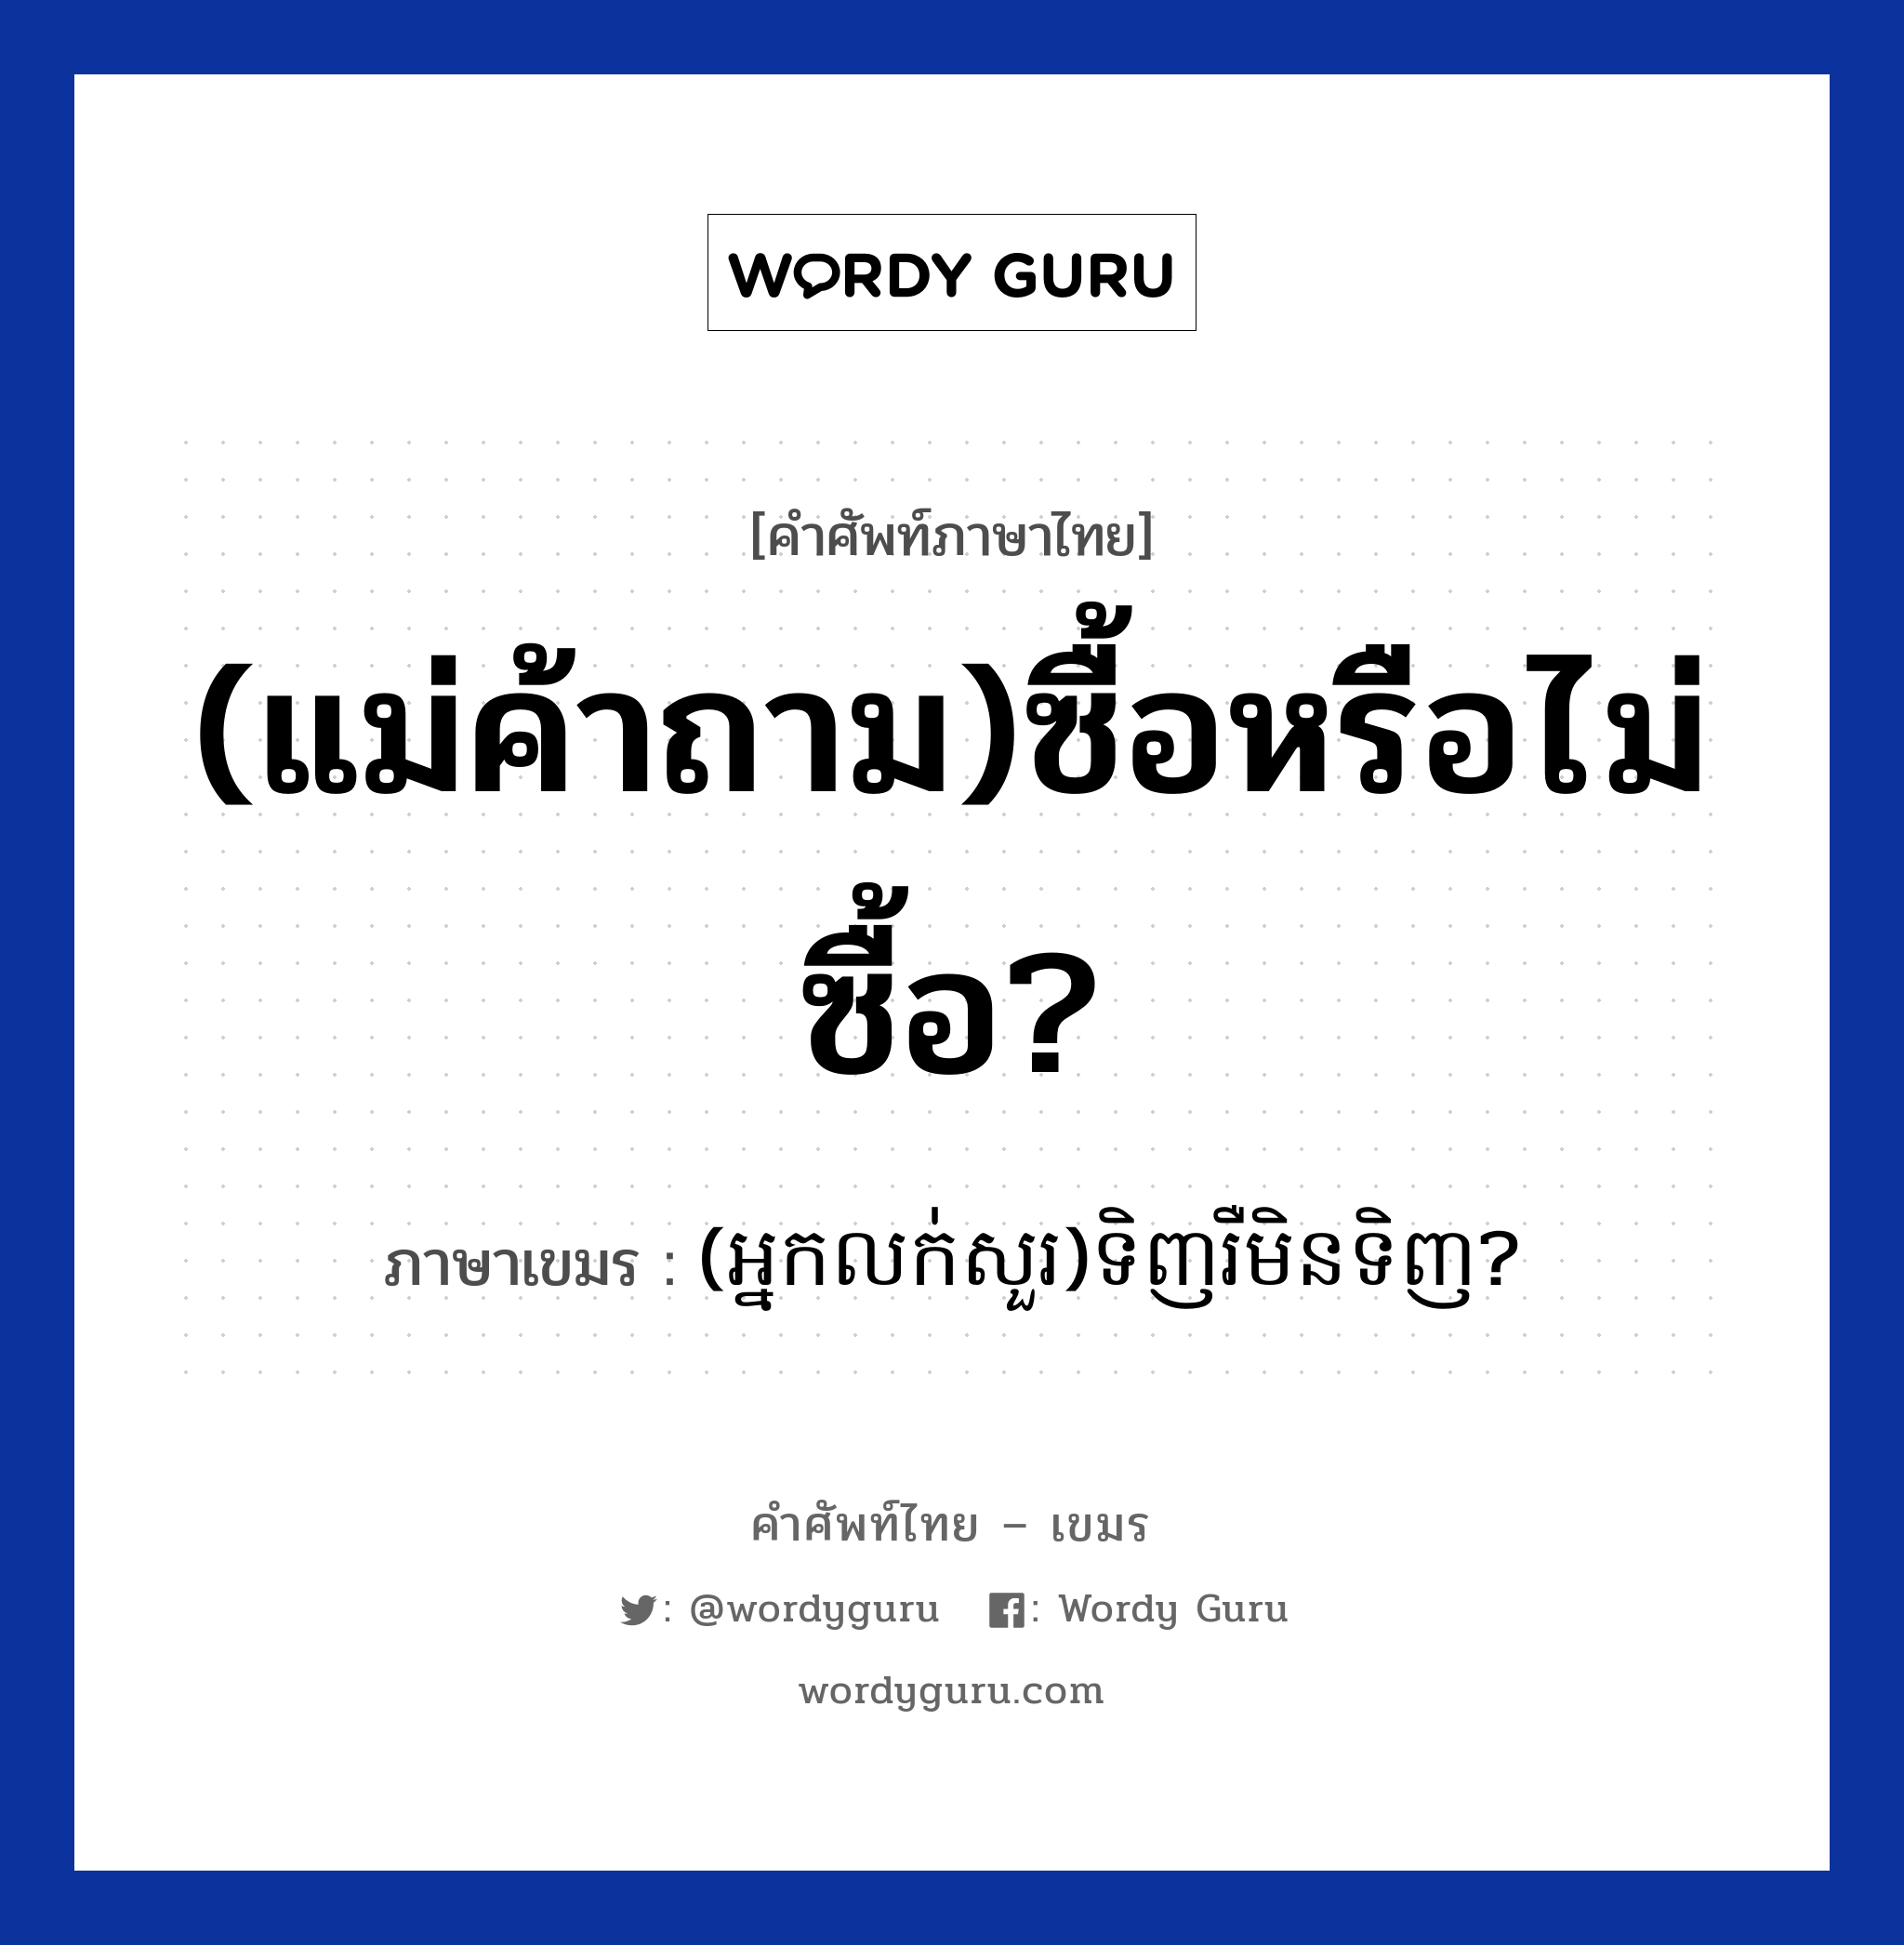 (แม่ค้าถาม)ซื้อหรือไม่ซื้อ? แปลว่า? คำศัพท์ในกลุ่มประเภท การซื้อของ, คำศัพท์ภาษาไทย - เขมร (แม่ค้าถาม)ซื้อหรือไม่ซื้อ? ภาษาเขมร (អ្នកលក់សួរ)ទិញរឺមិនទិញ? หมวด การซื้อของ (Neaklouksour)tinh reo men tinh? หมวด การซื้อของ